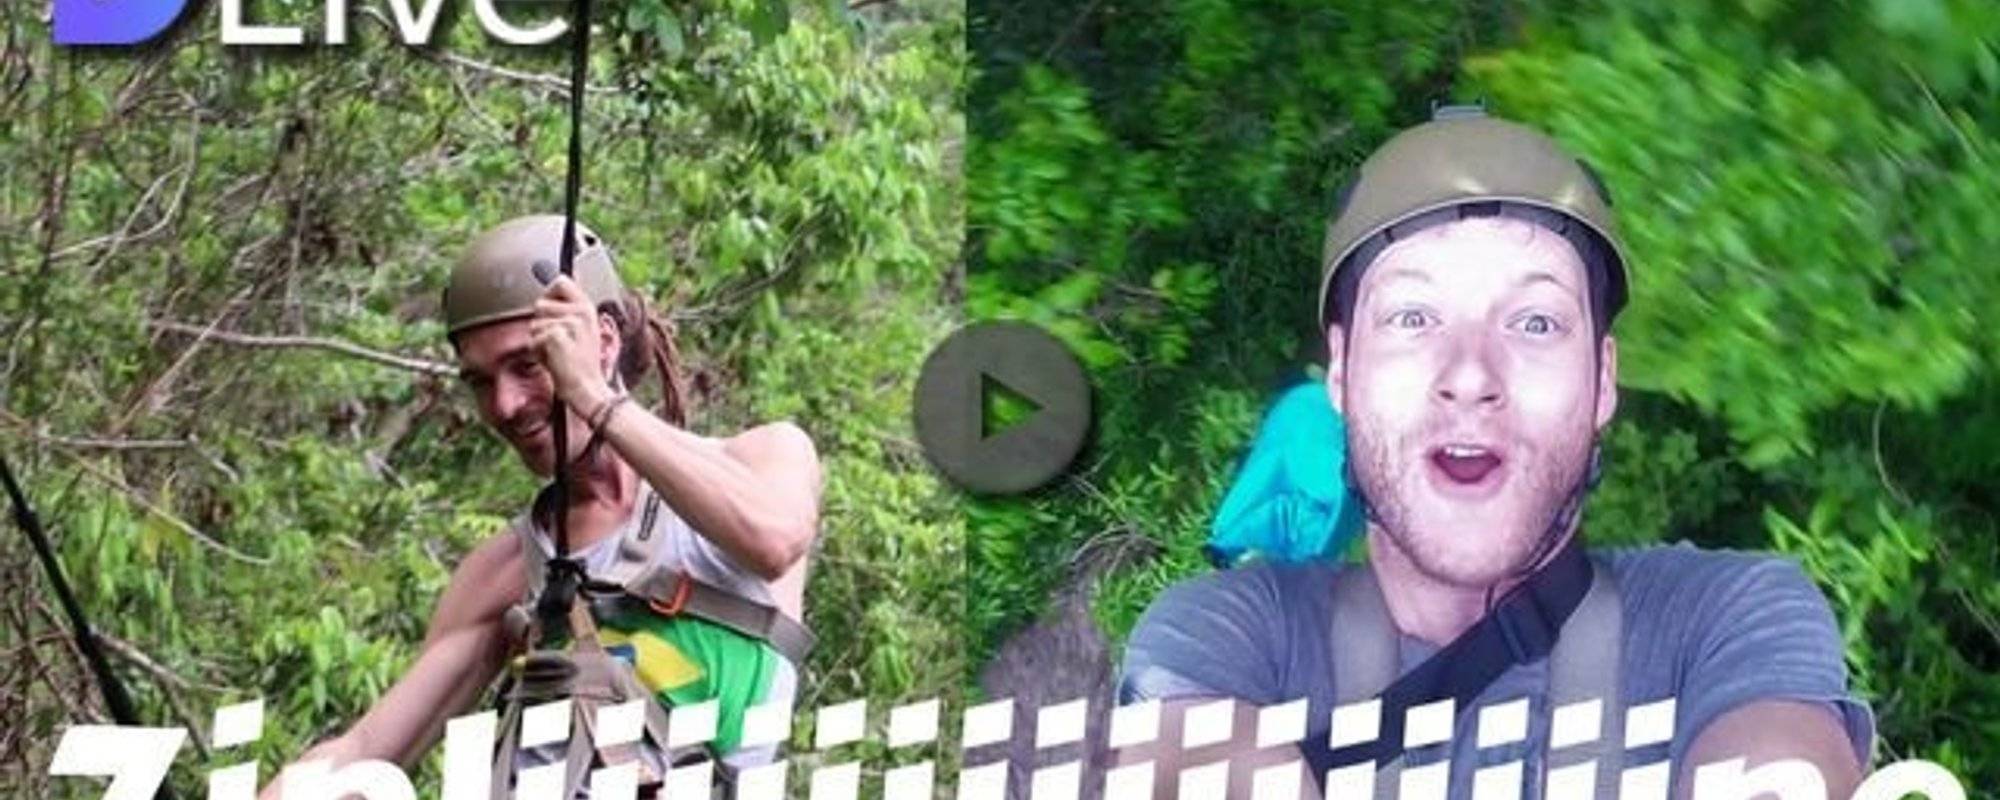 DLive video - Epic Zipline in Dominican Republic